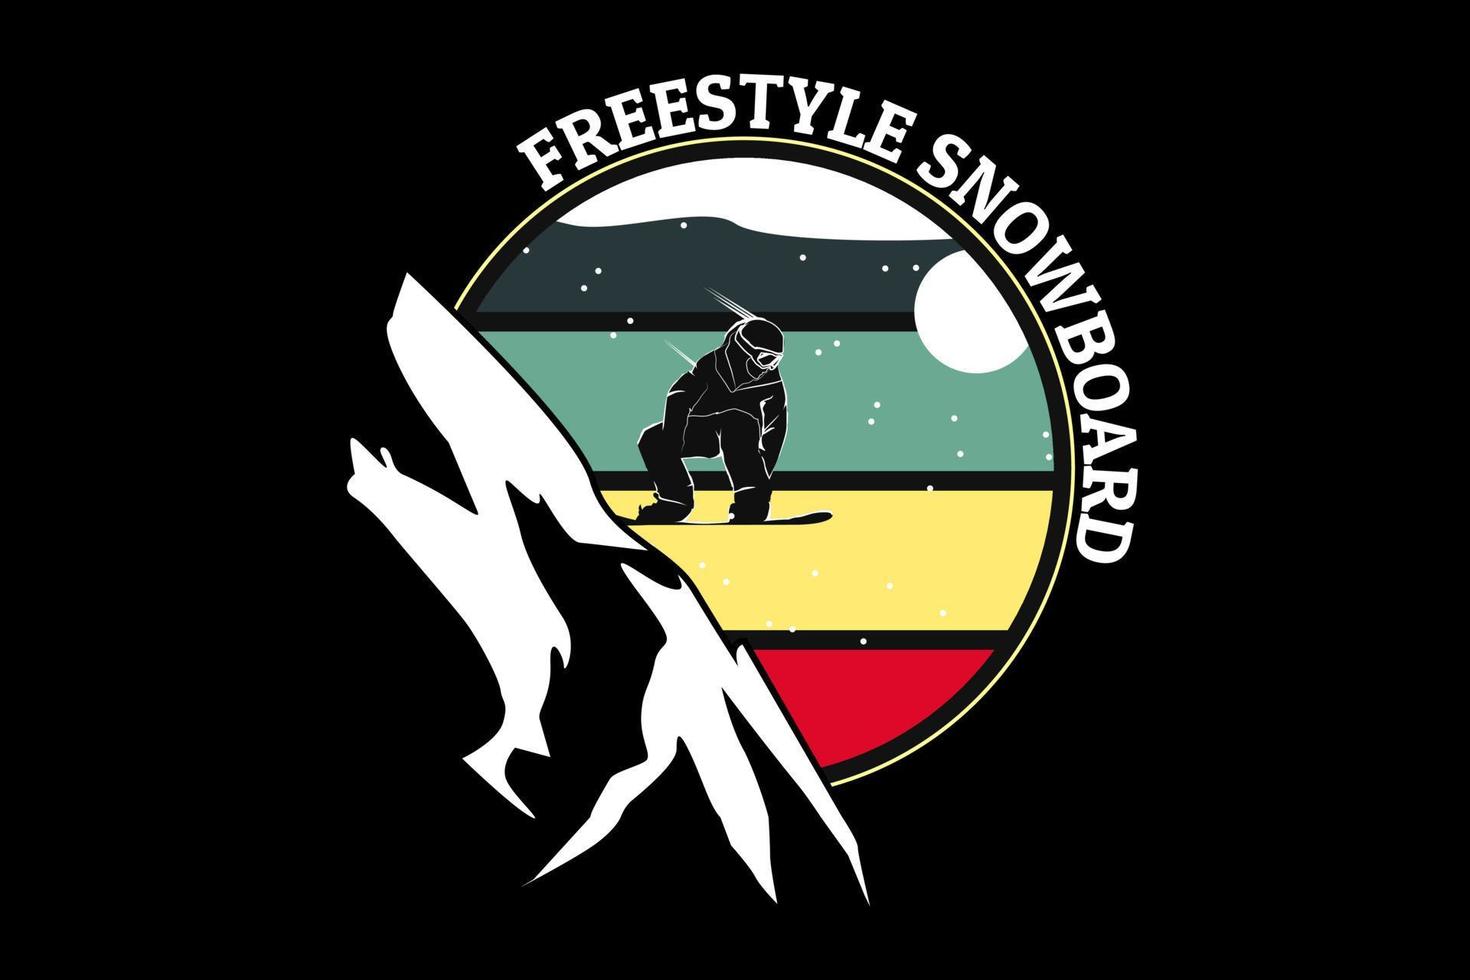 design retrò di snowboard freestyle vettore